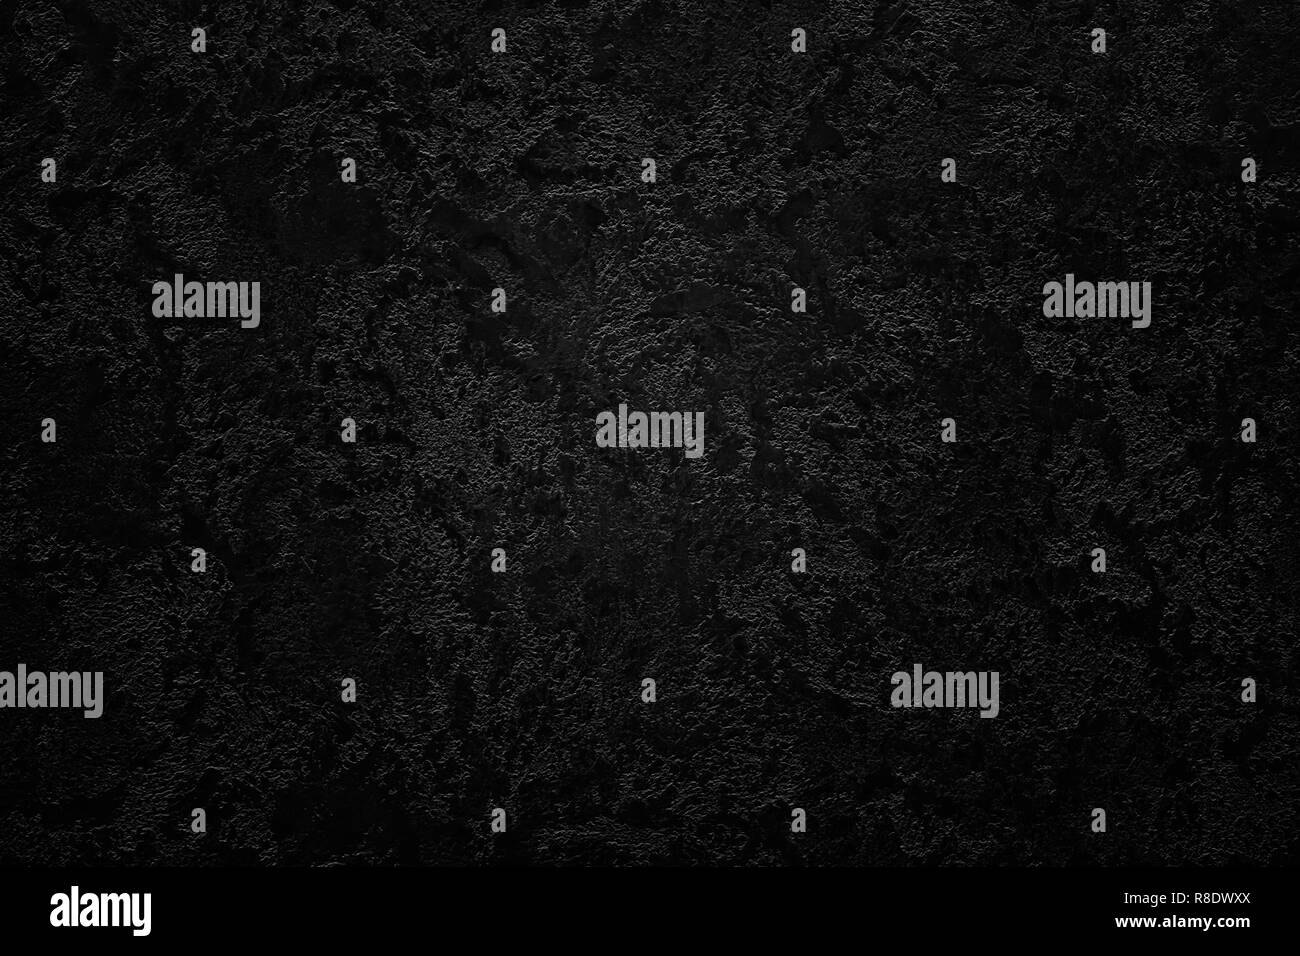 Dark grunge black abstract texture vignette background Stock Photo